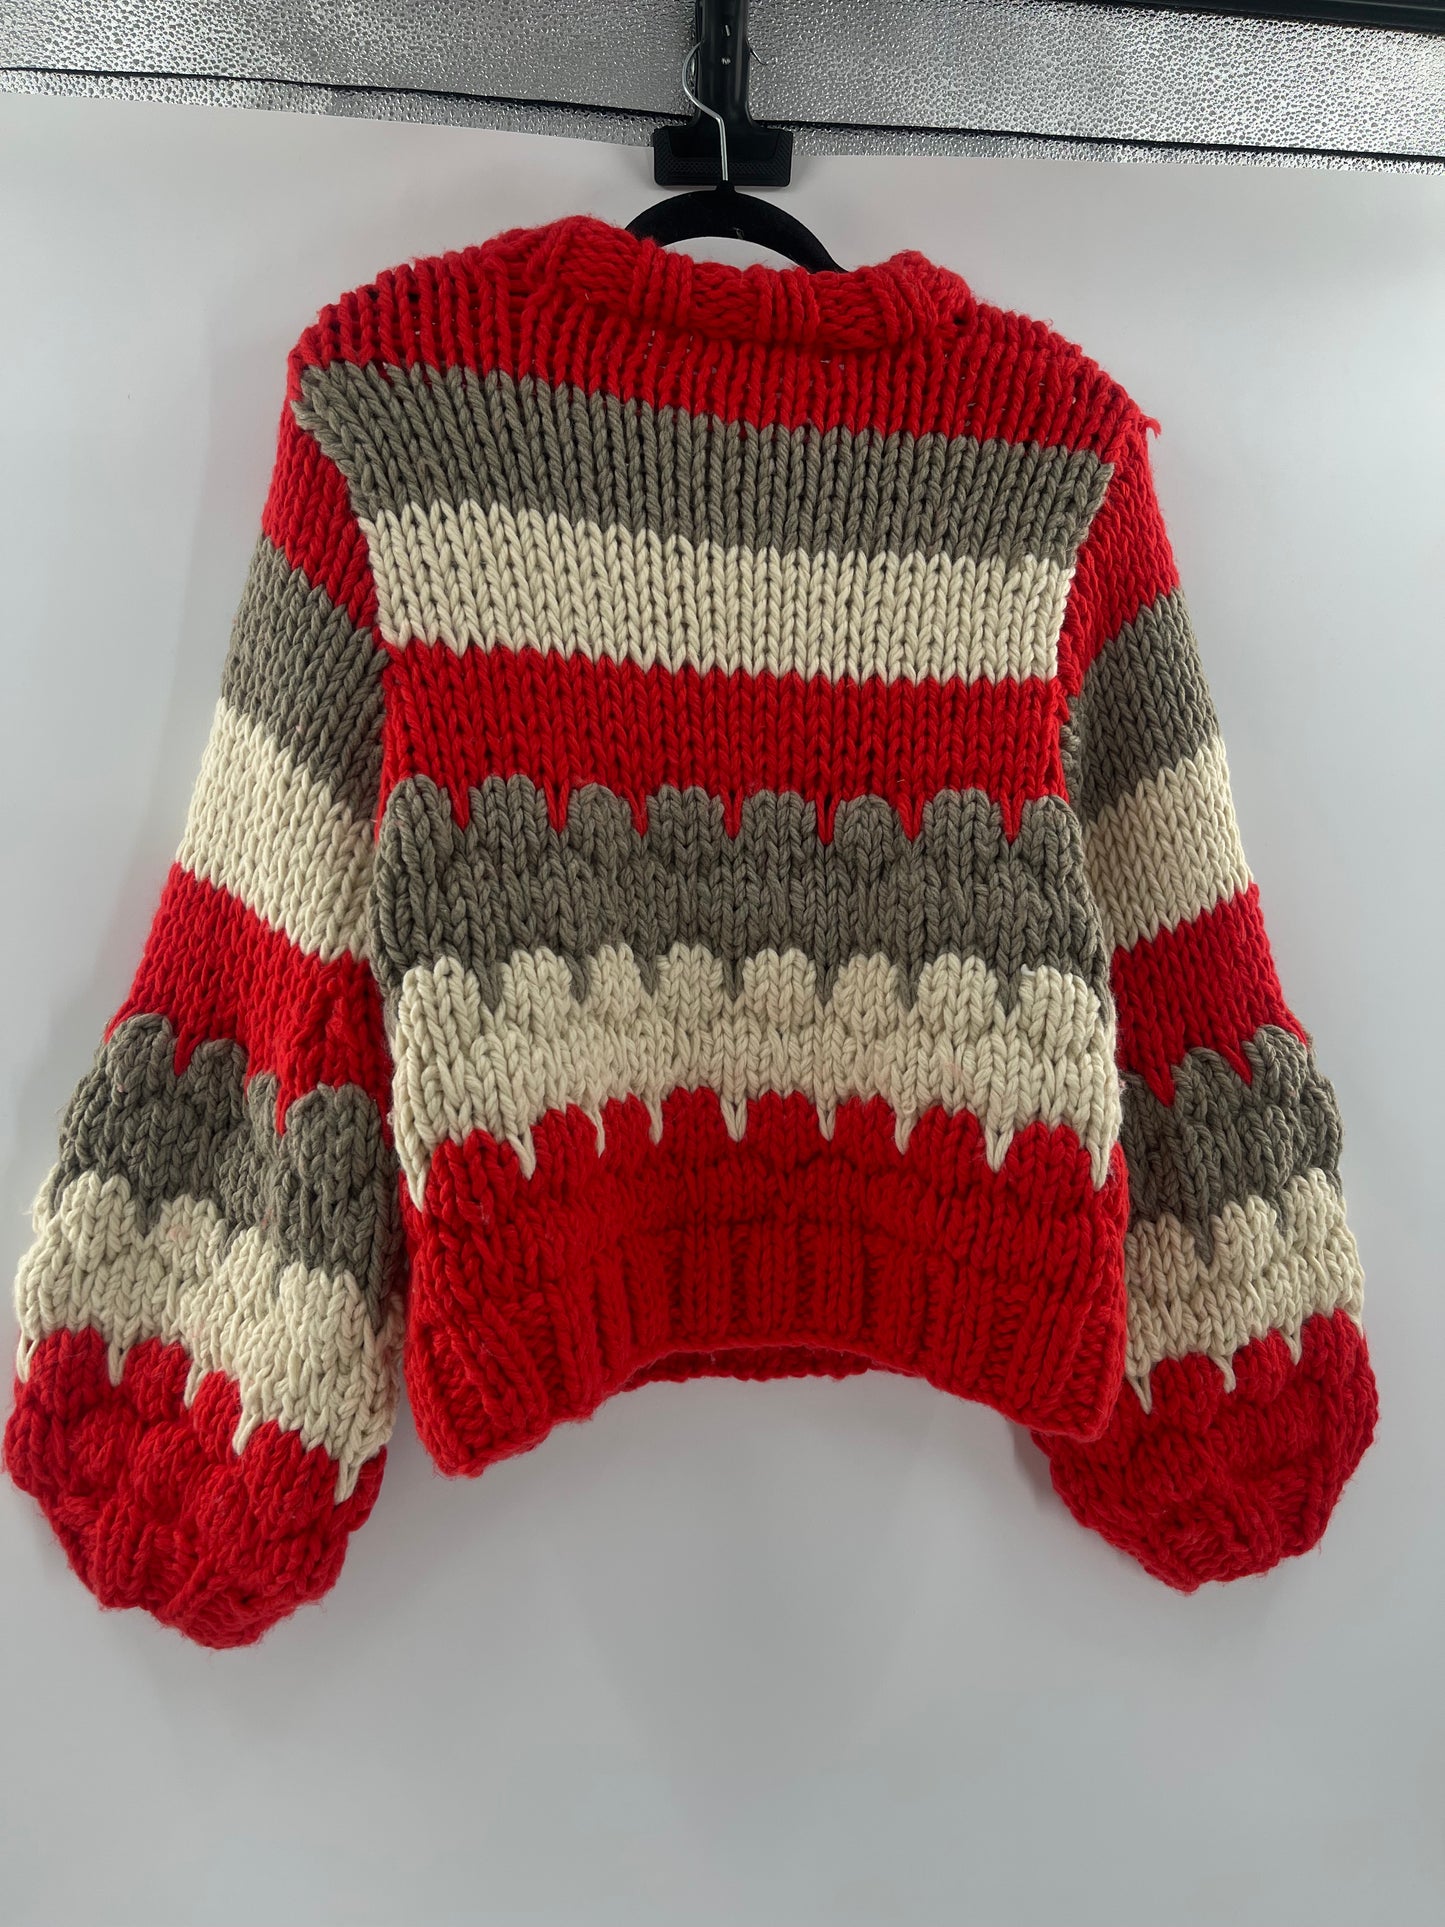 Urban Outfitters Heavy Duty Yarn Sweater (XS/S)